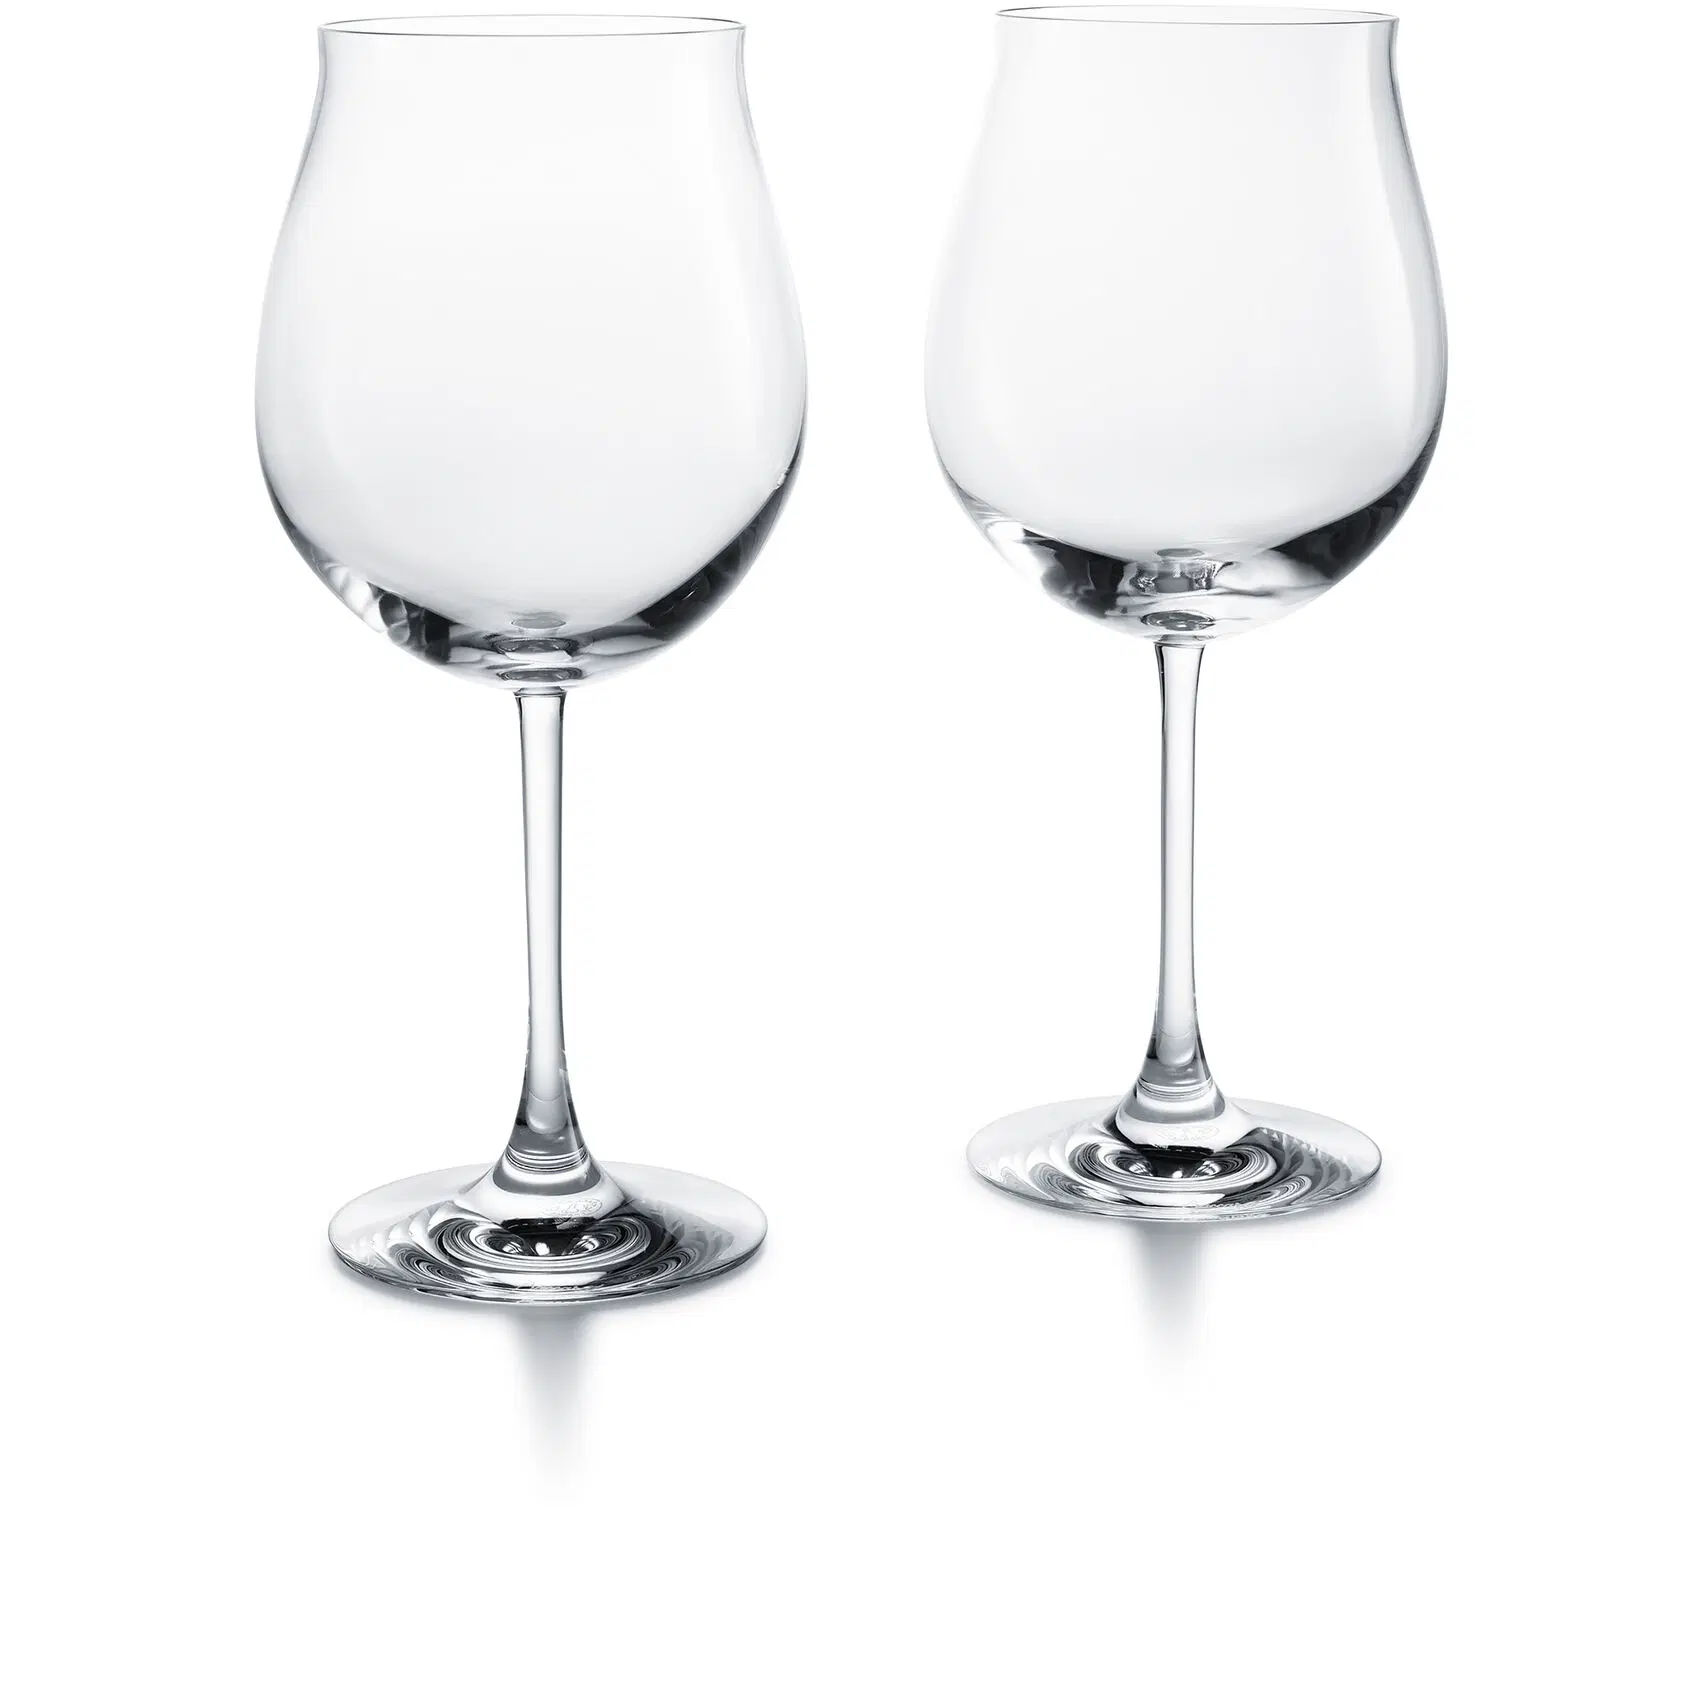 Baccarat Degustation Grand Bourgogne Tasting Glass, pair